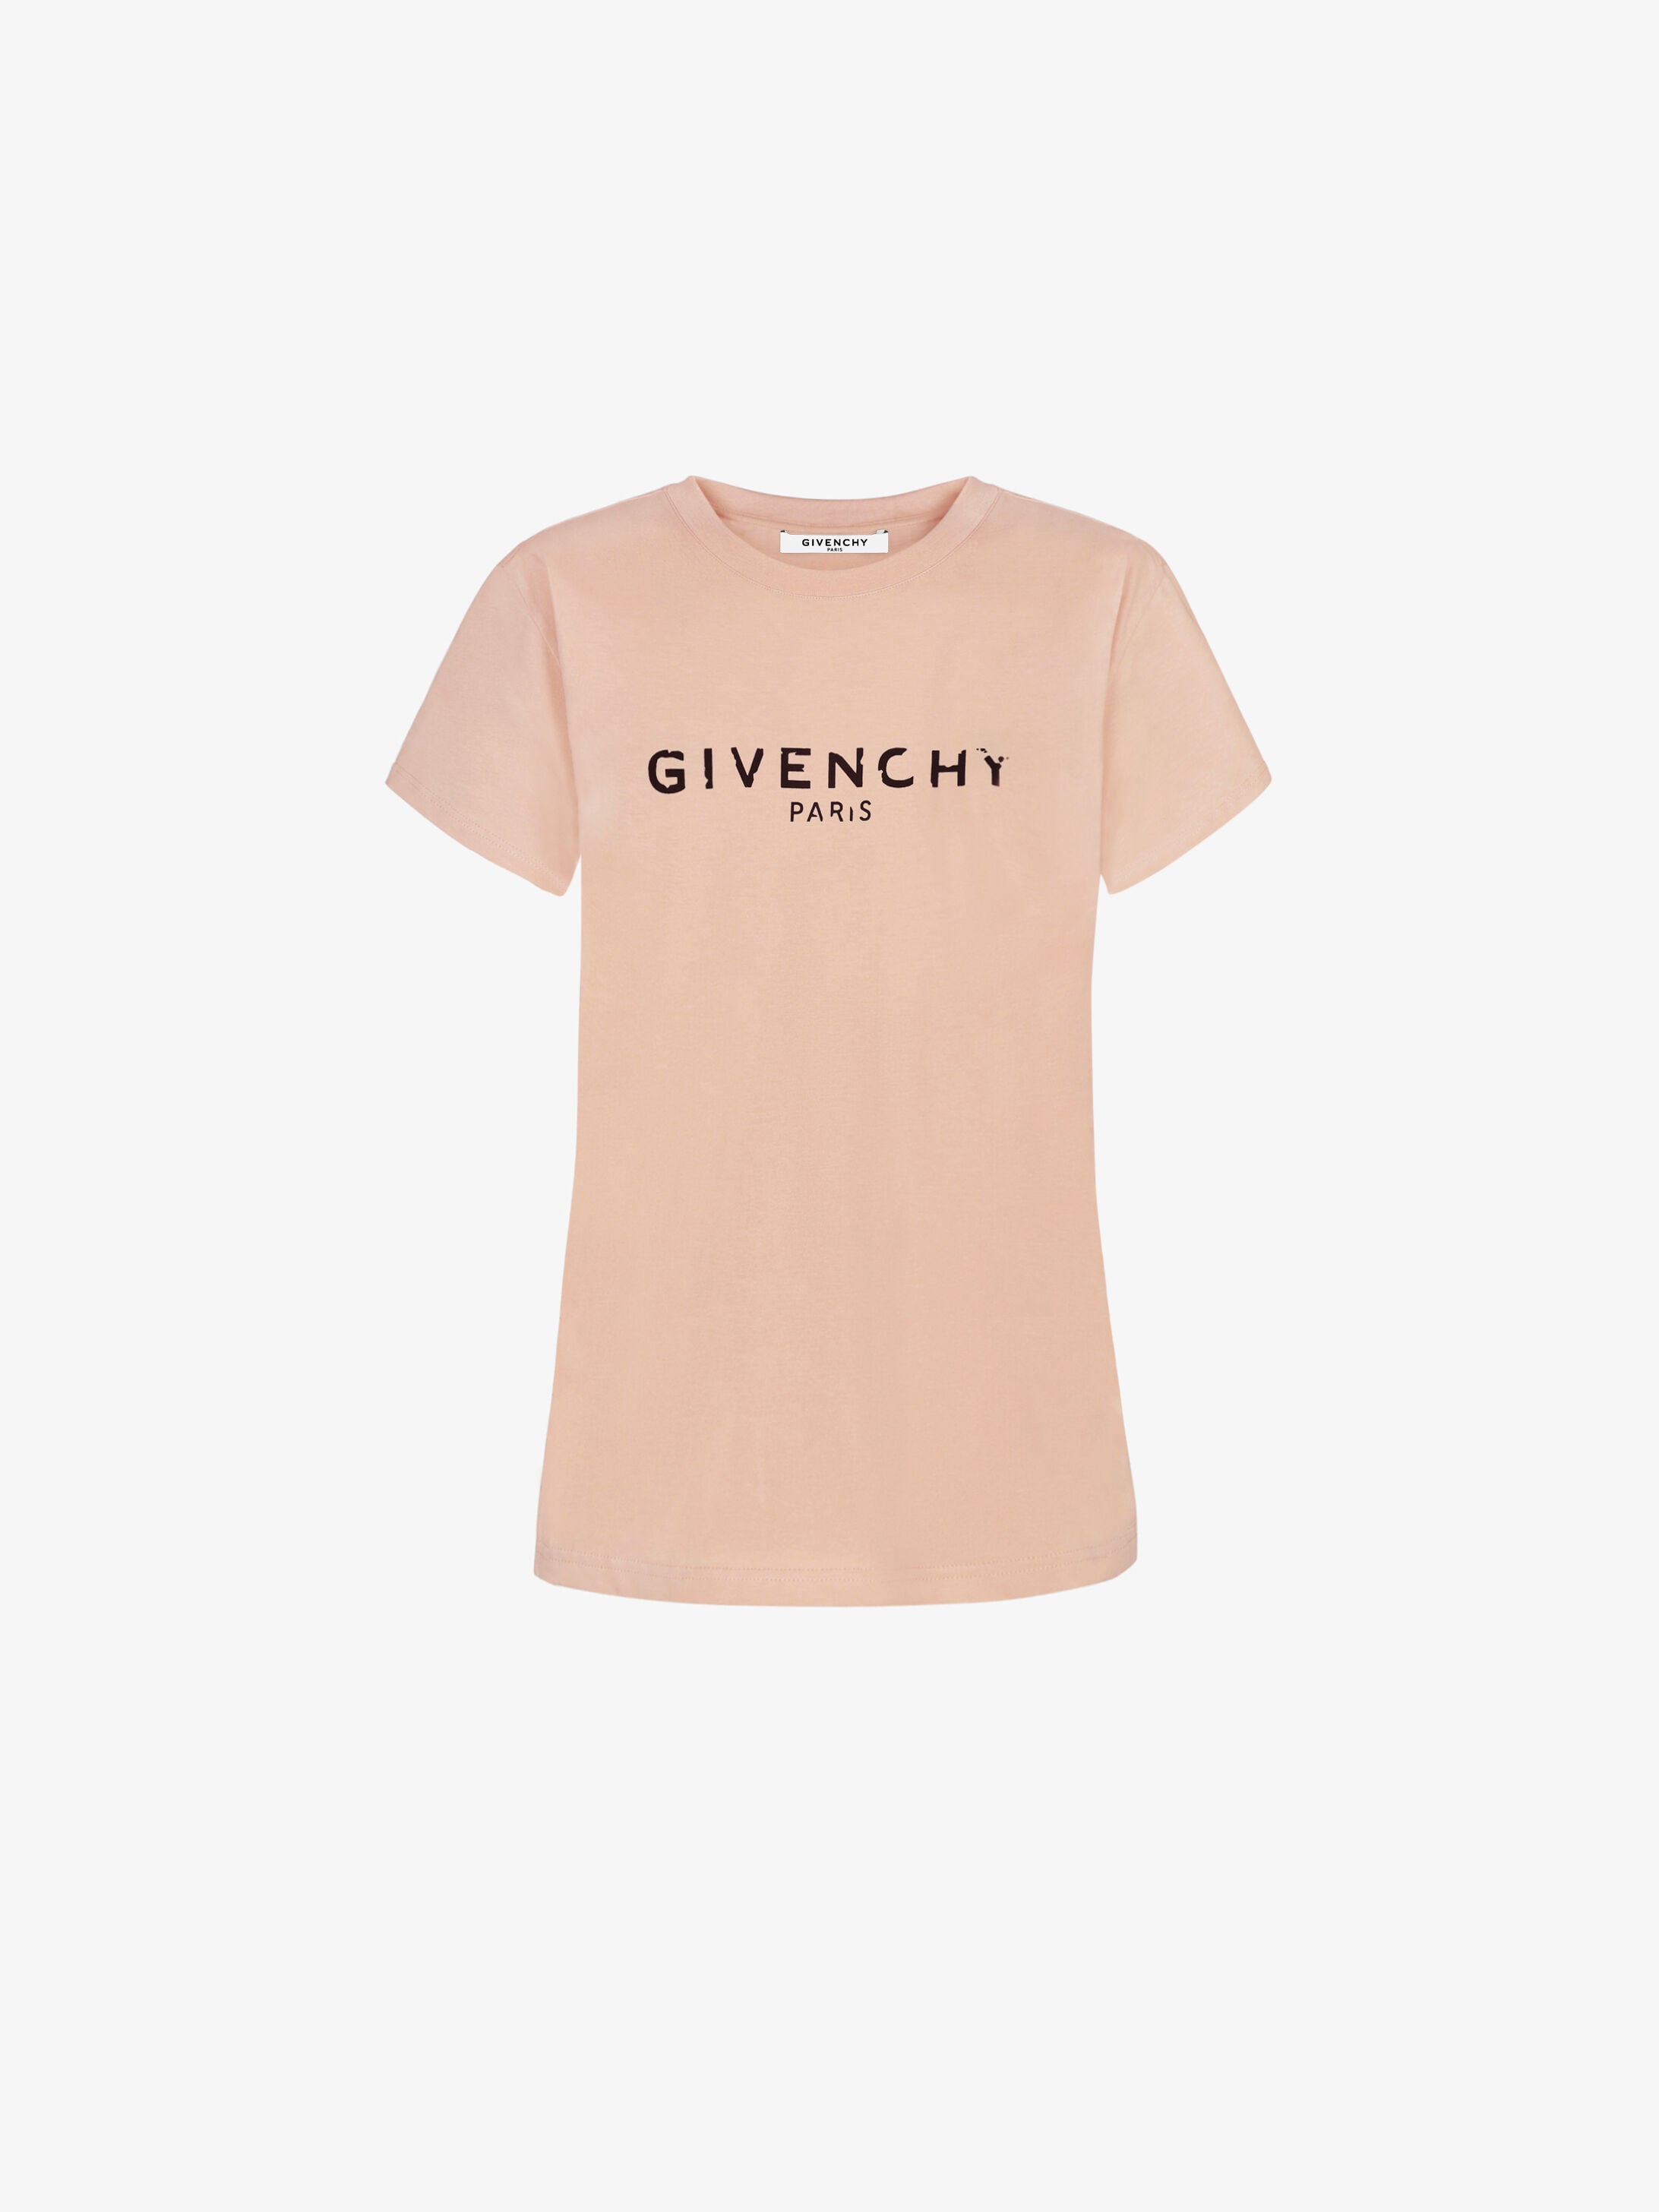 givenchy shirt pink